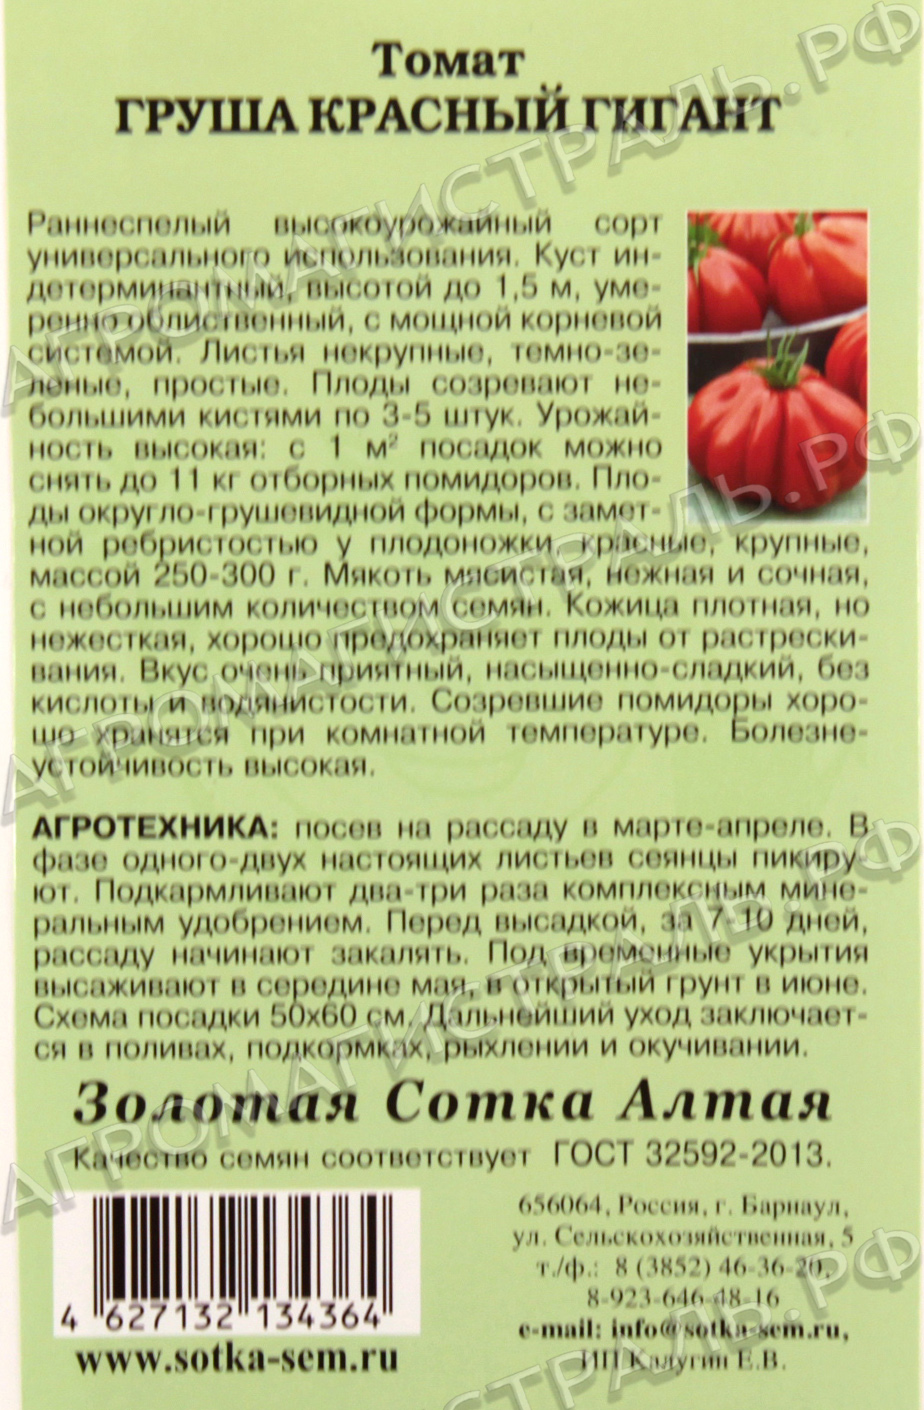 Сортовые особенности томата персей